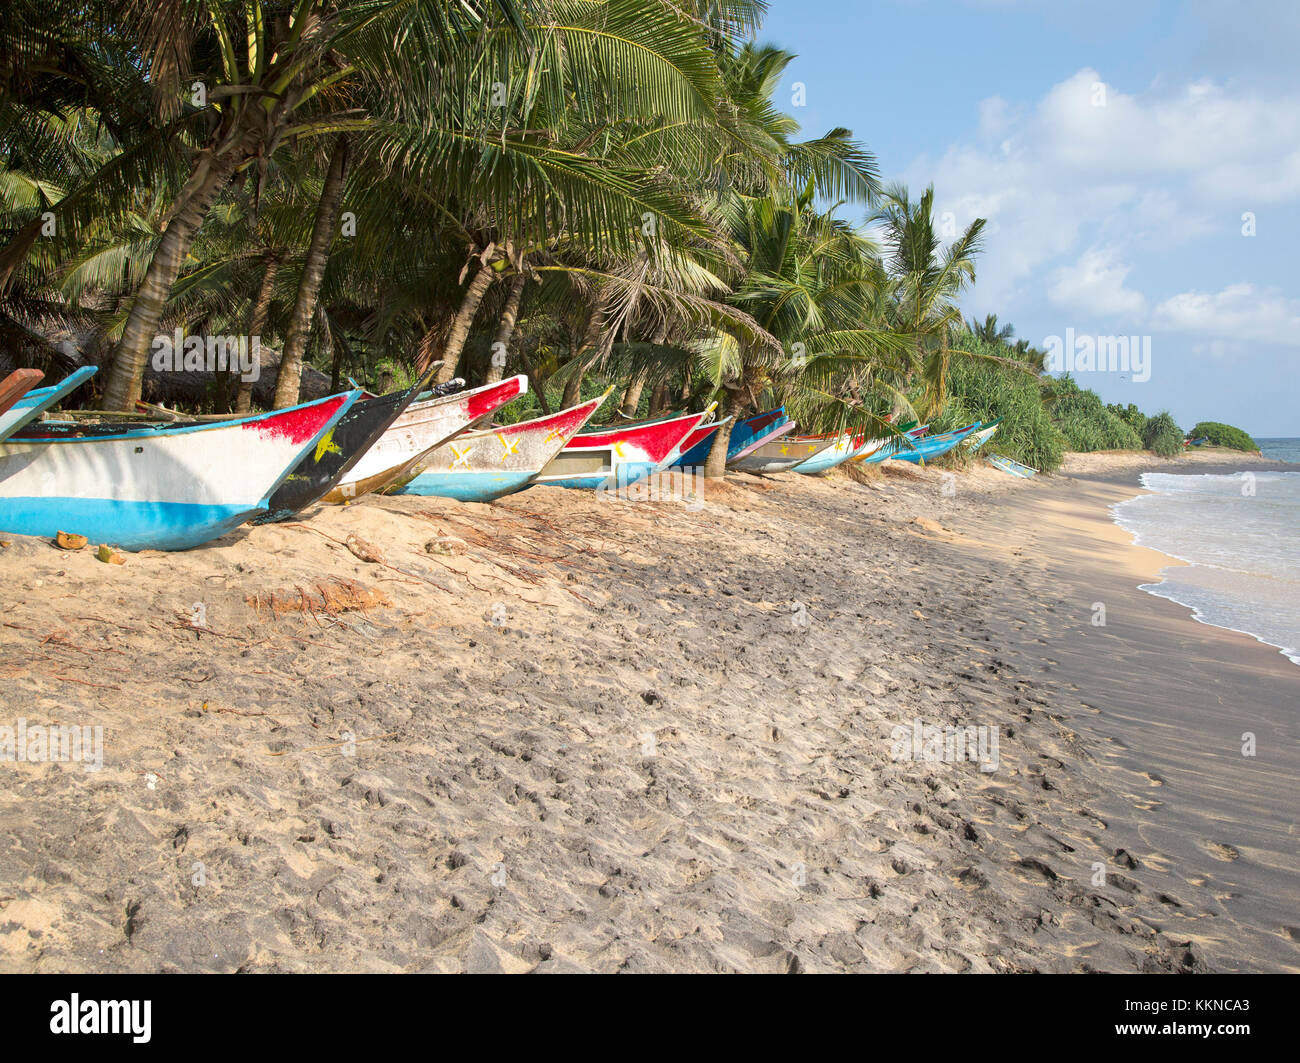 Dai colori vivaci canoe pesca sotto palme di cocco di spiaggia sabbiosa tropicale, Mirissa, Sri Lanka Foto Stock